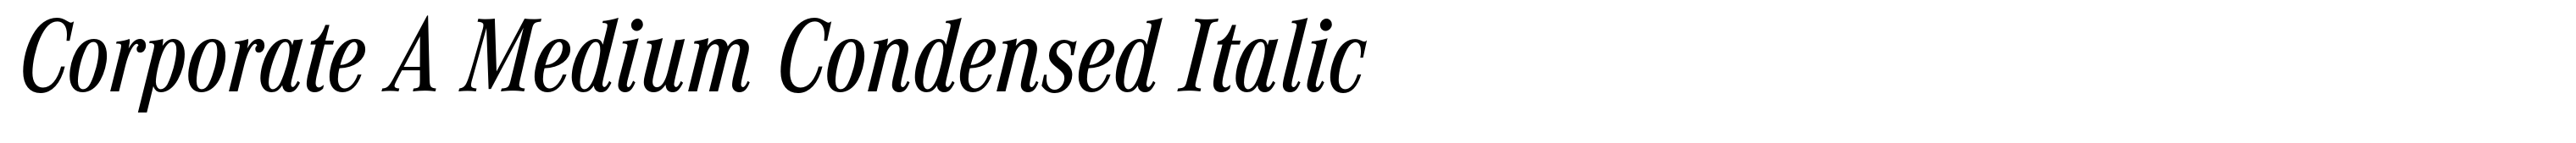 Corporate A Medium Condensed Italic